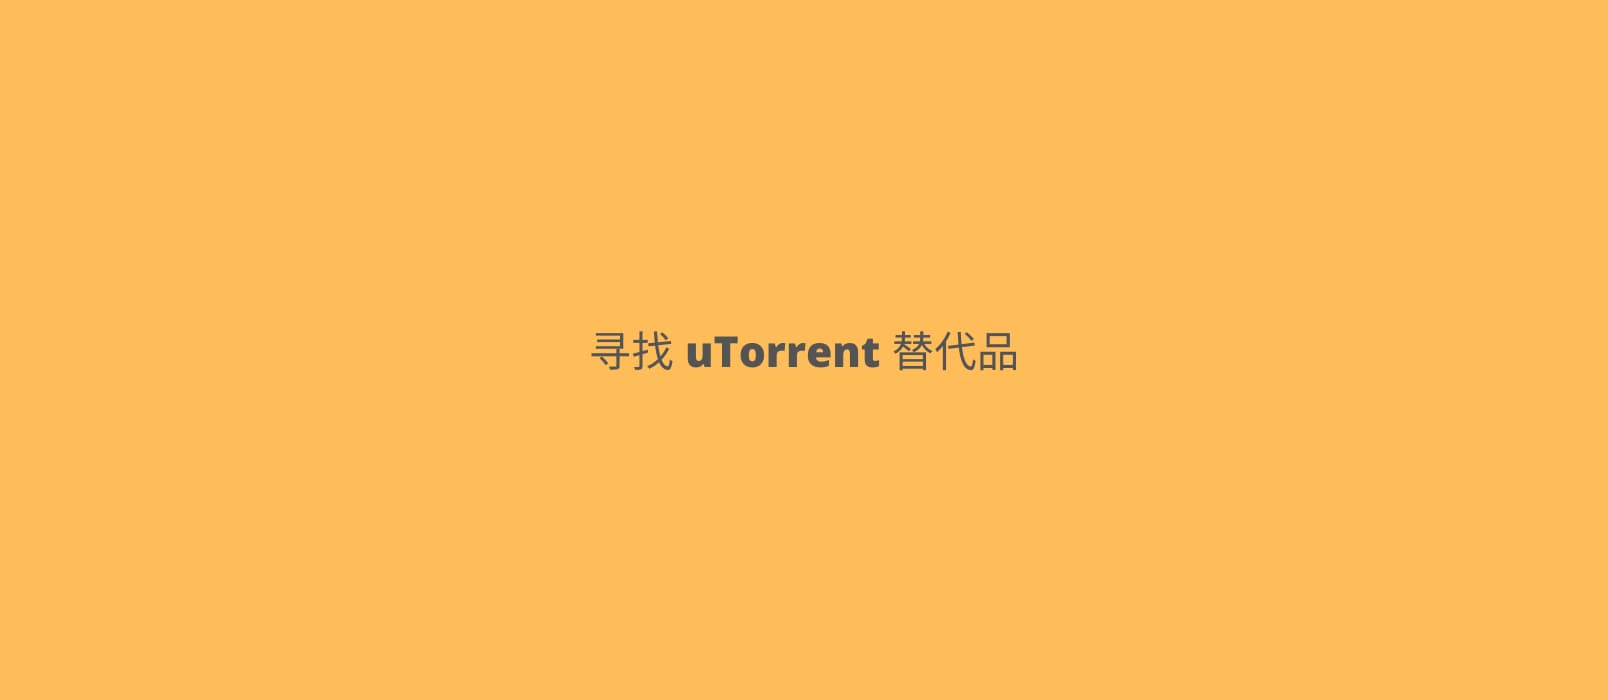 爆 uTorrent 被多款杀毒软件查杀，有什么好用的替代品吗？ 1